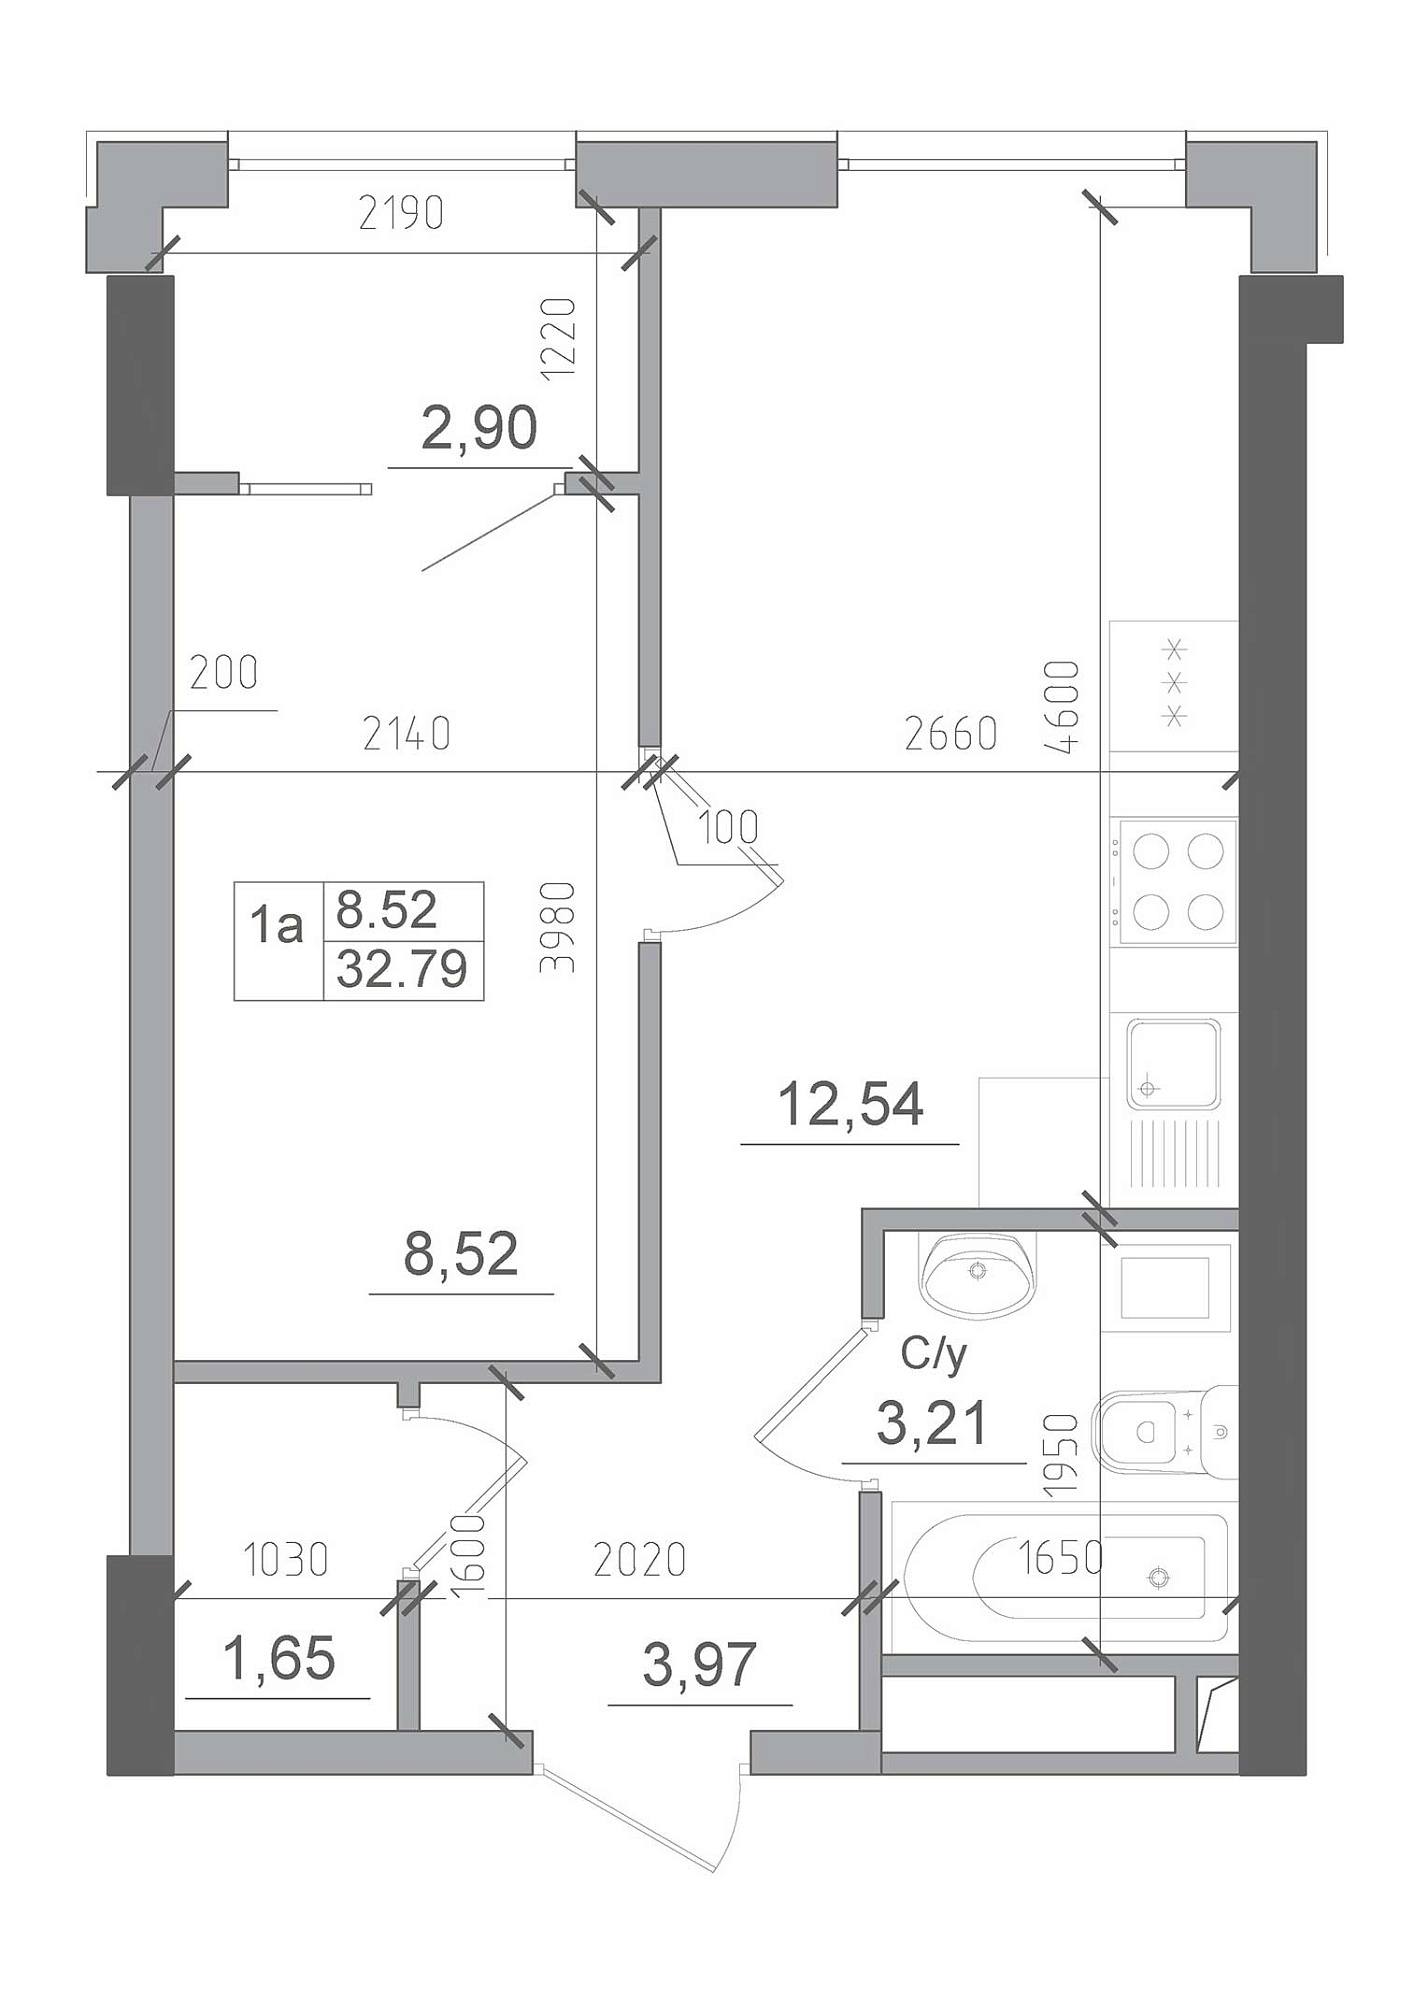 Планування 1-к квартира площею 32.79м2, AB-22-04/00001.